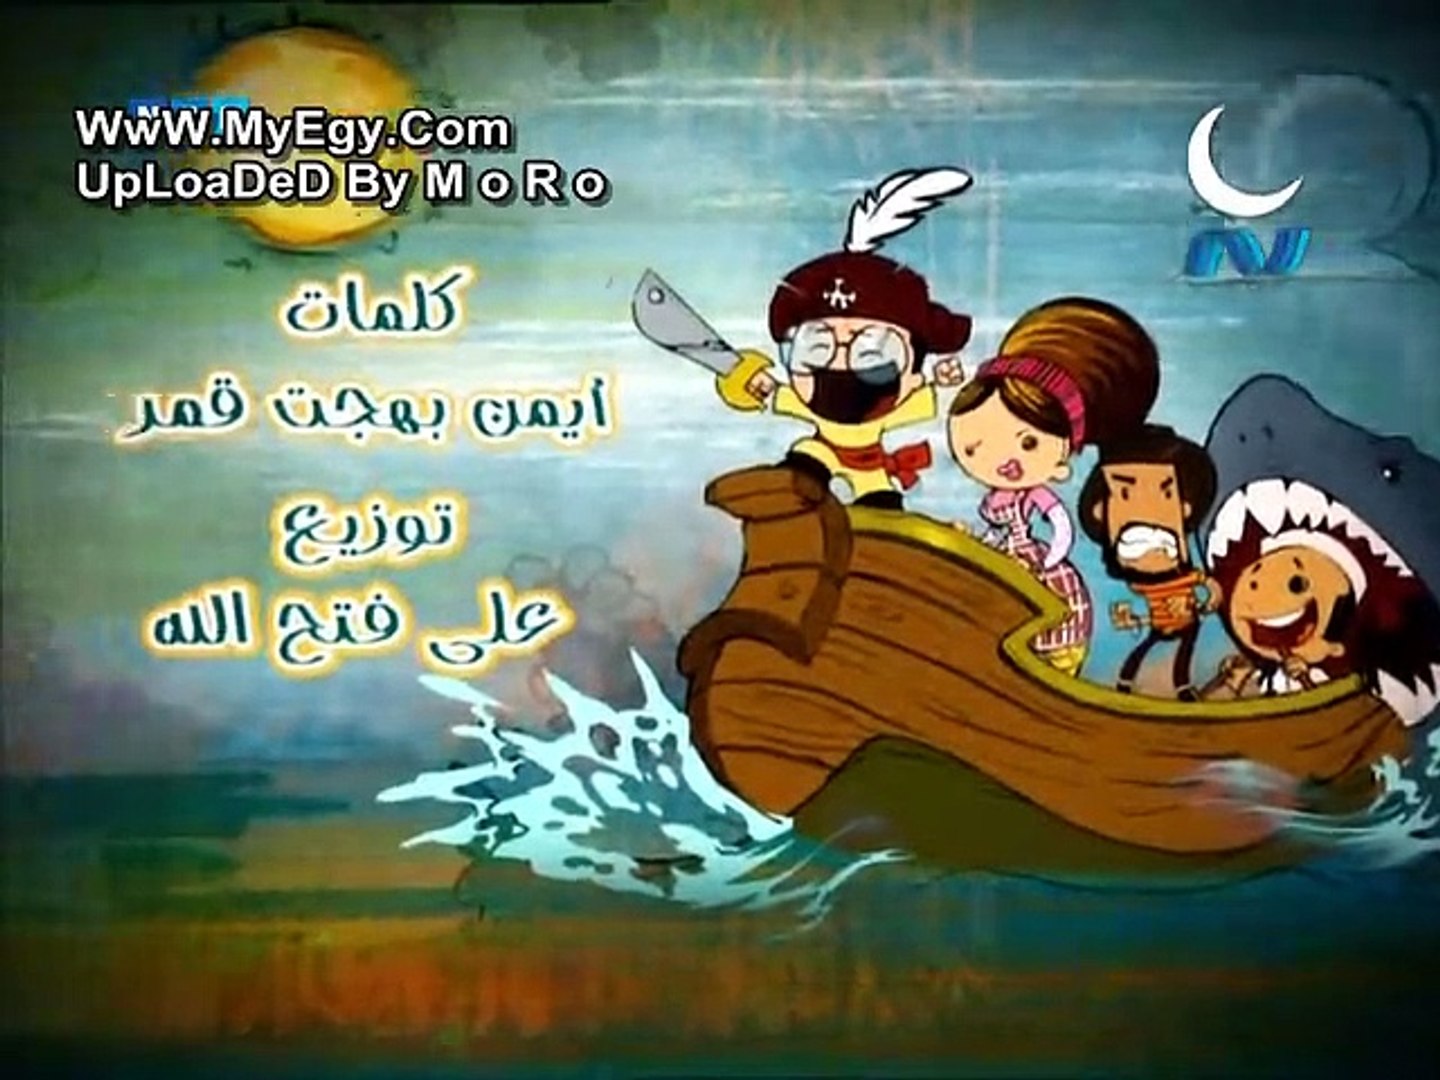 القبطان عزوز الجزء الأول - الحلقة الأولي - video Dailymotion